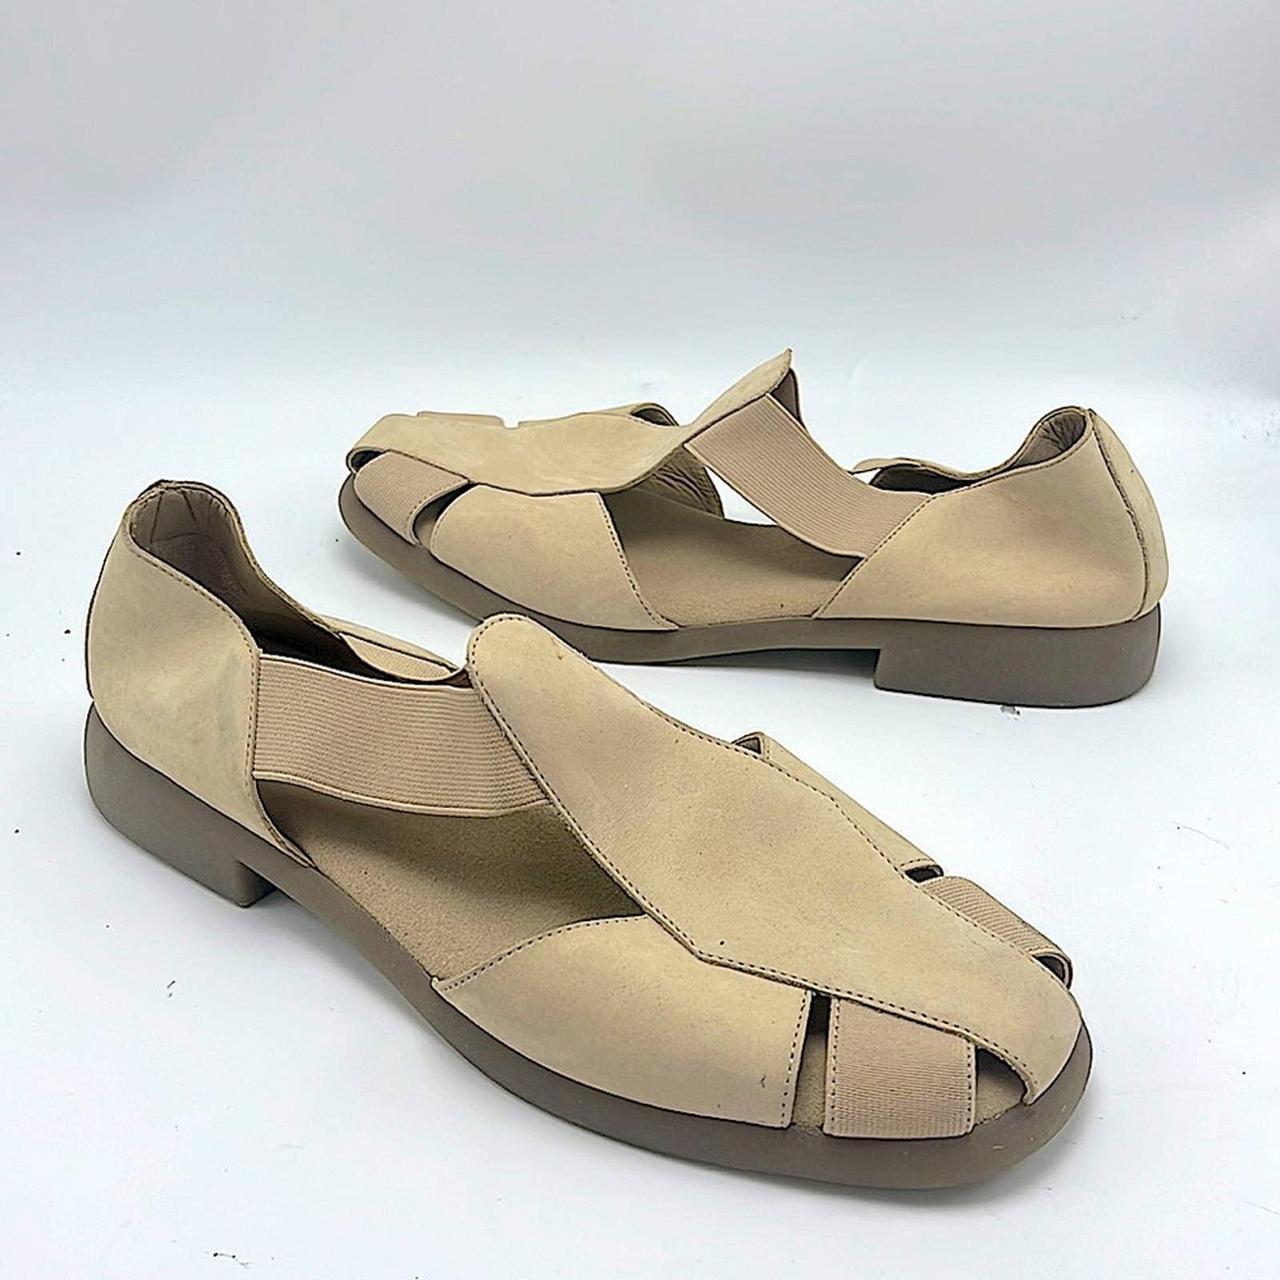 Aerosoles tan loafer sandals size 10 coastal... - Depop